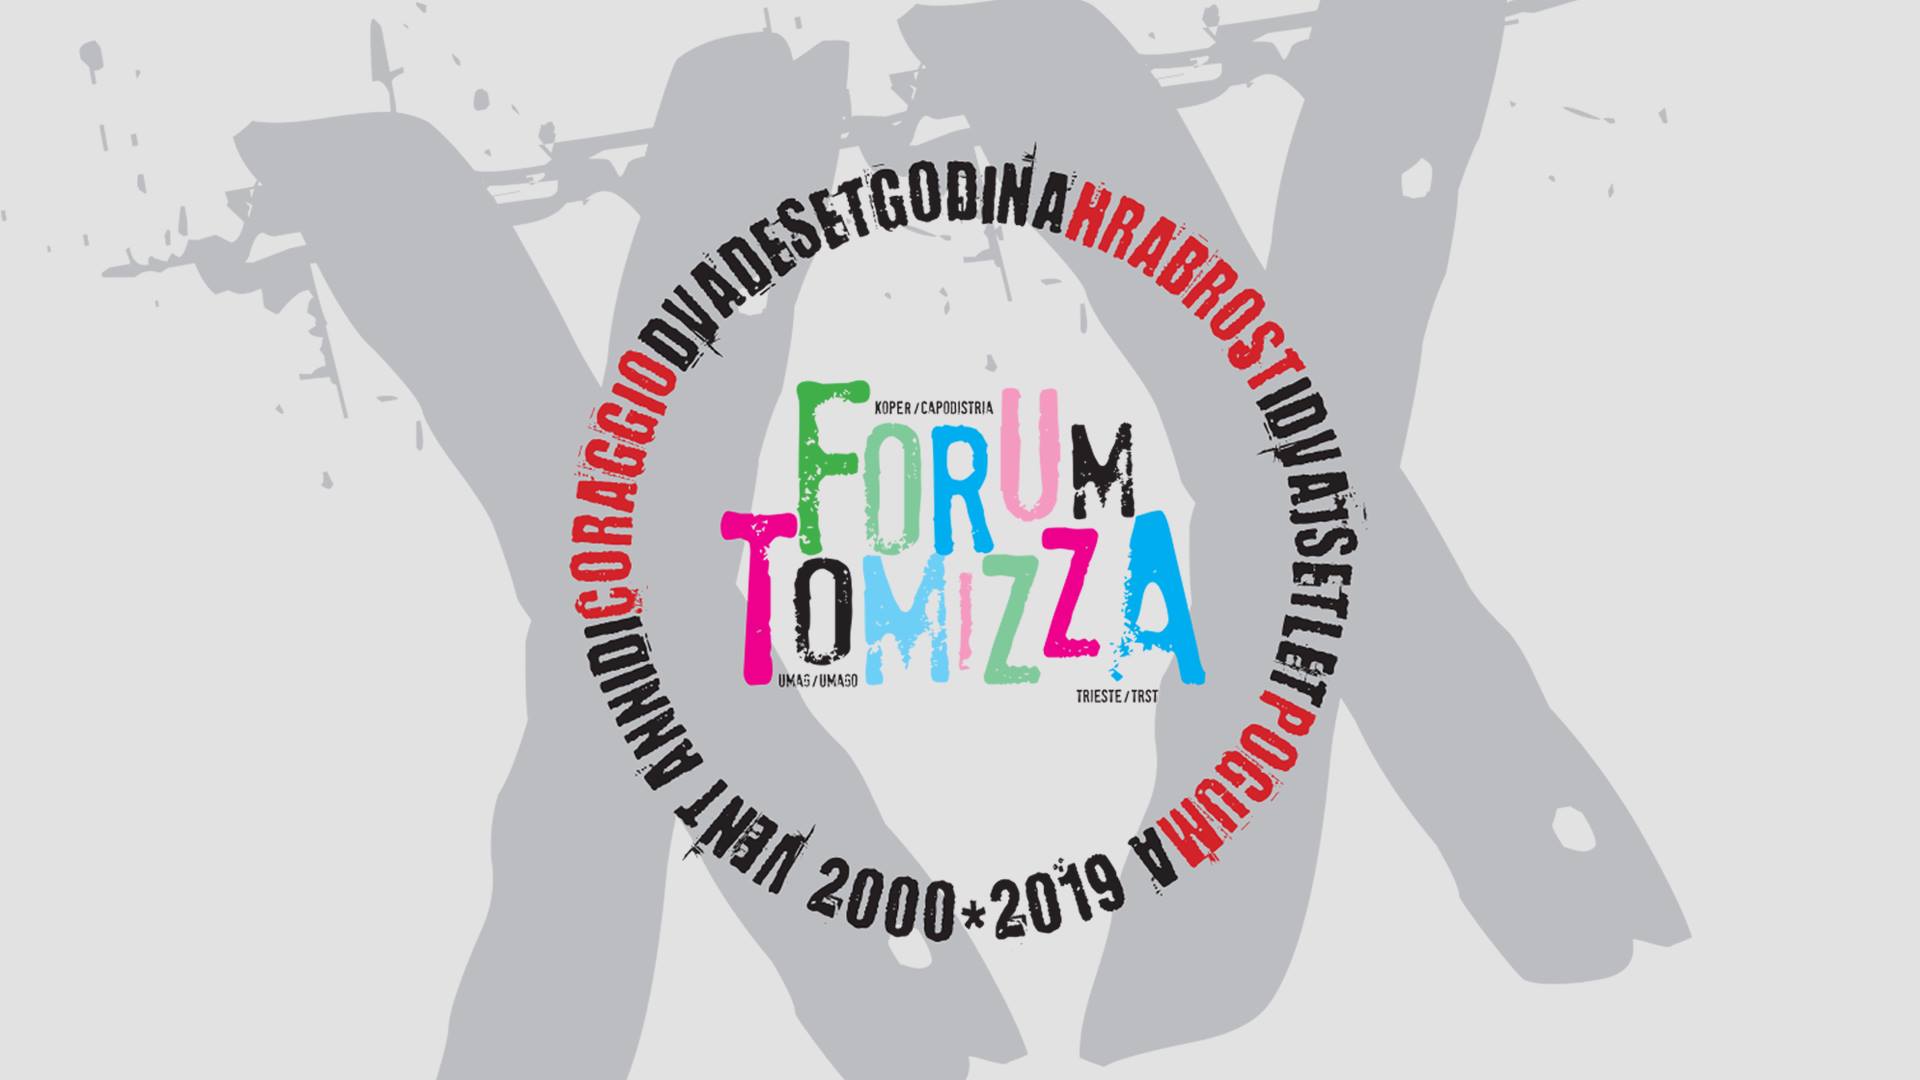 Forum Tomizza 2019: program